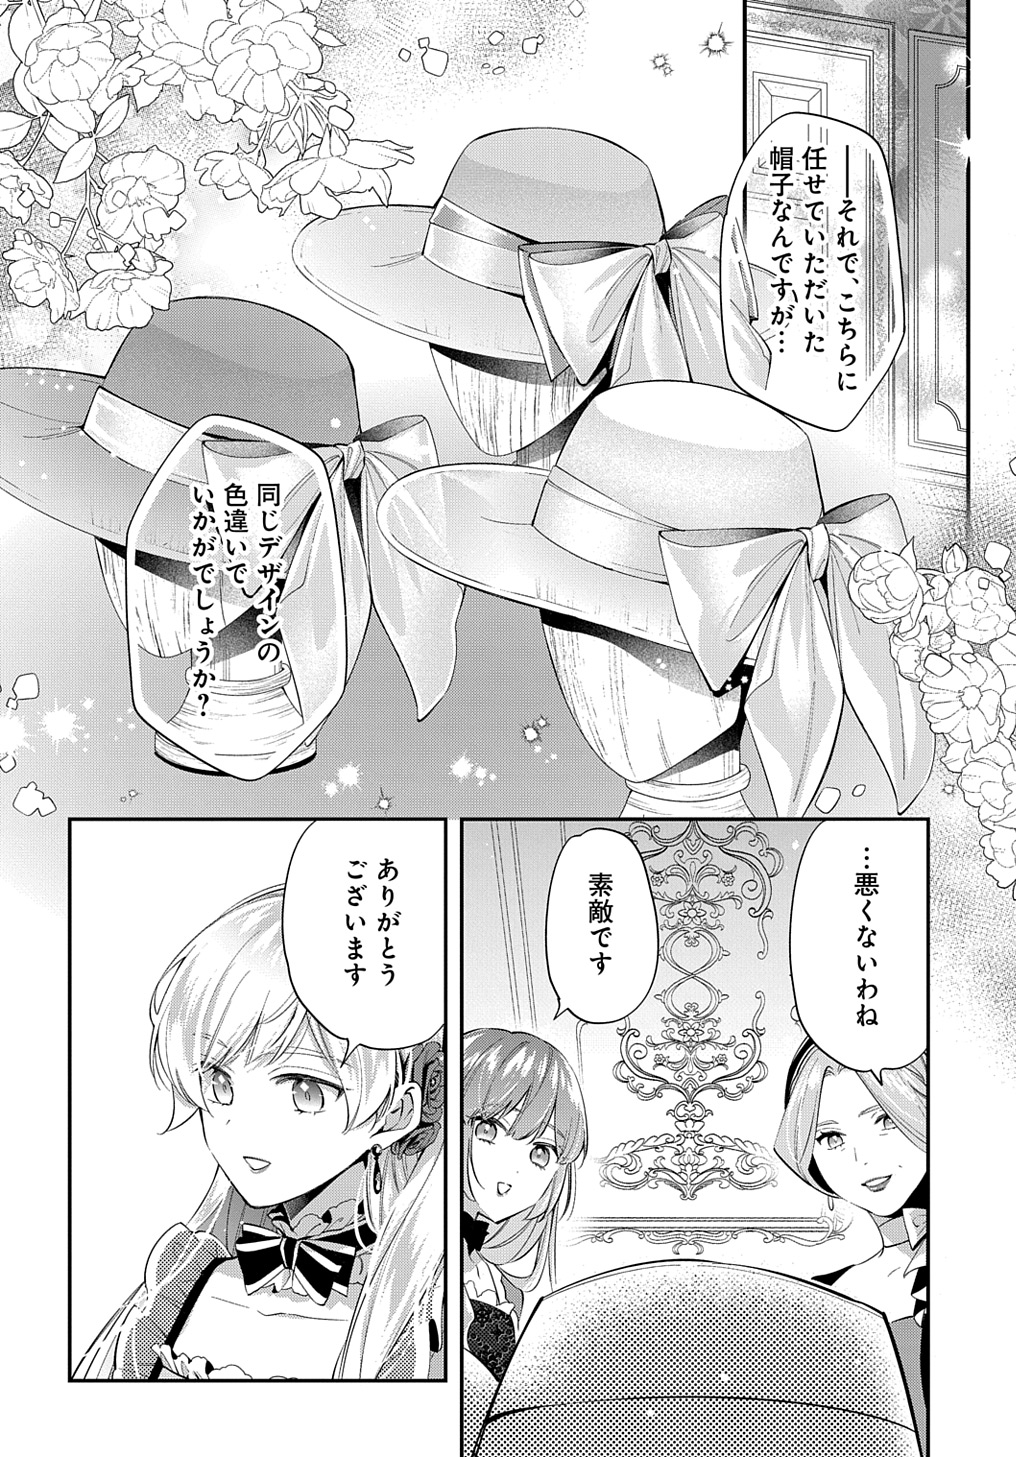 Outaishi ni Konyaku Hakisareta no de, Mou Baka no Furi wa Yameyou to Omoimasu - Chapter 21 - Page 16